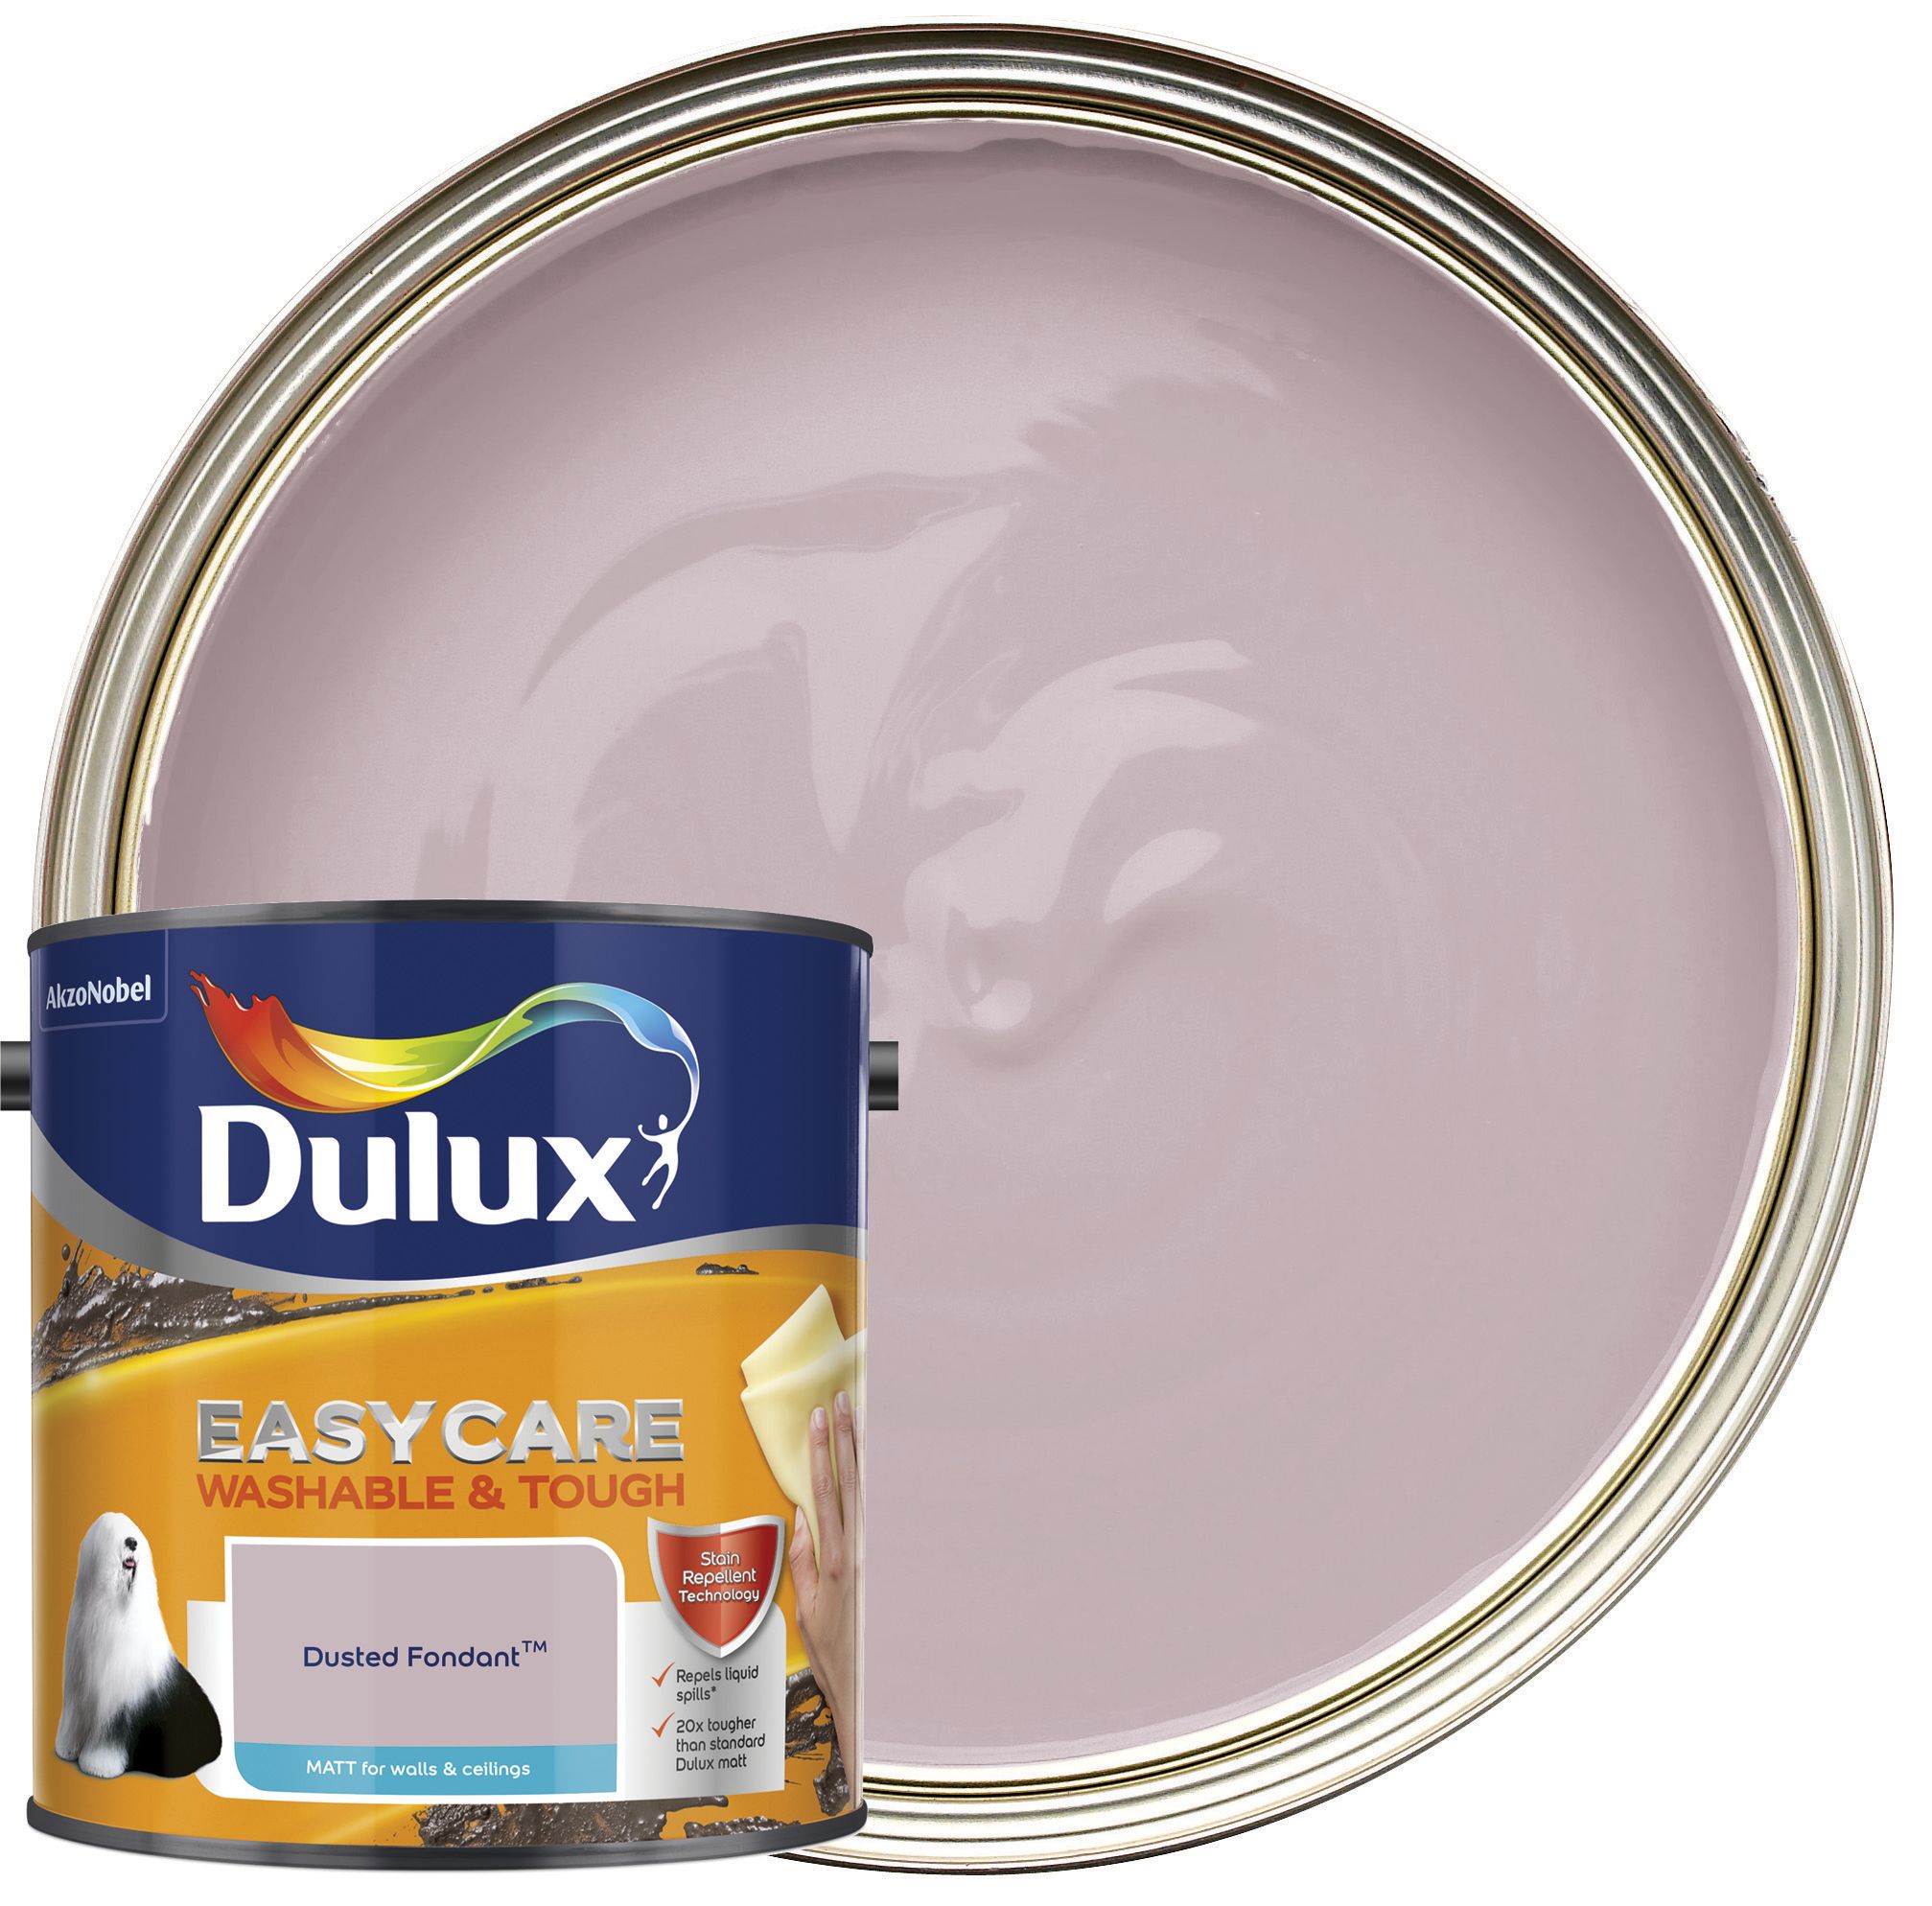 Image of Dulux Easycare Washable & Tough Matt Emulsion Paint - Dusted Fondant - 2.5L